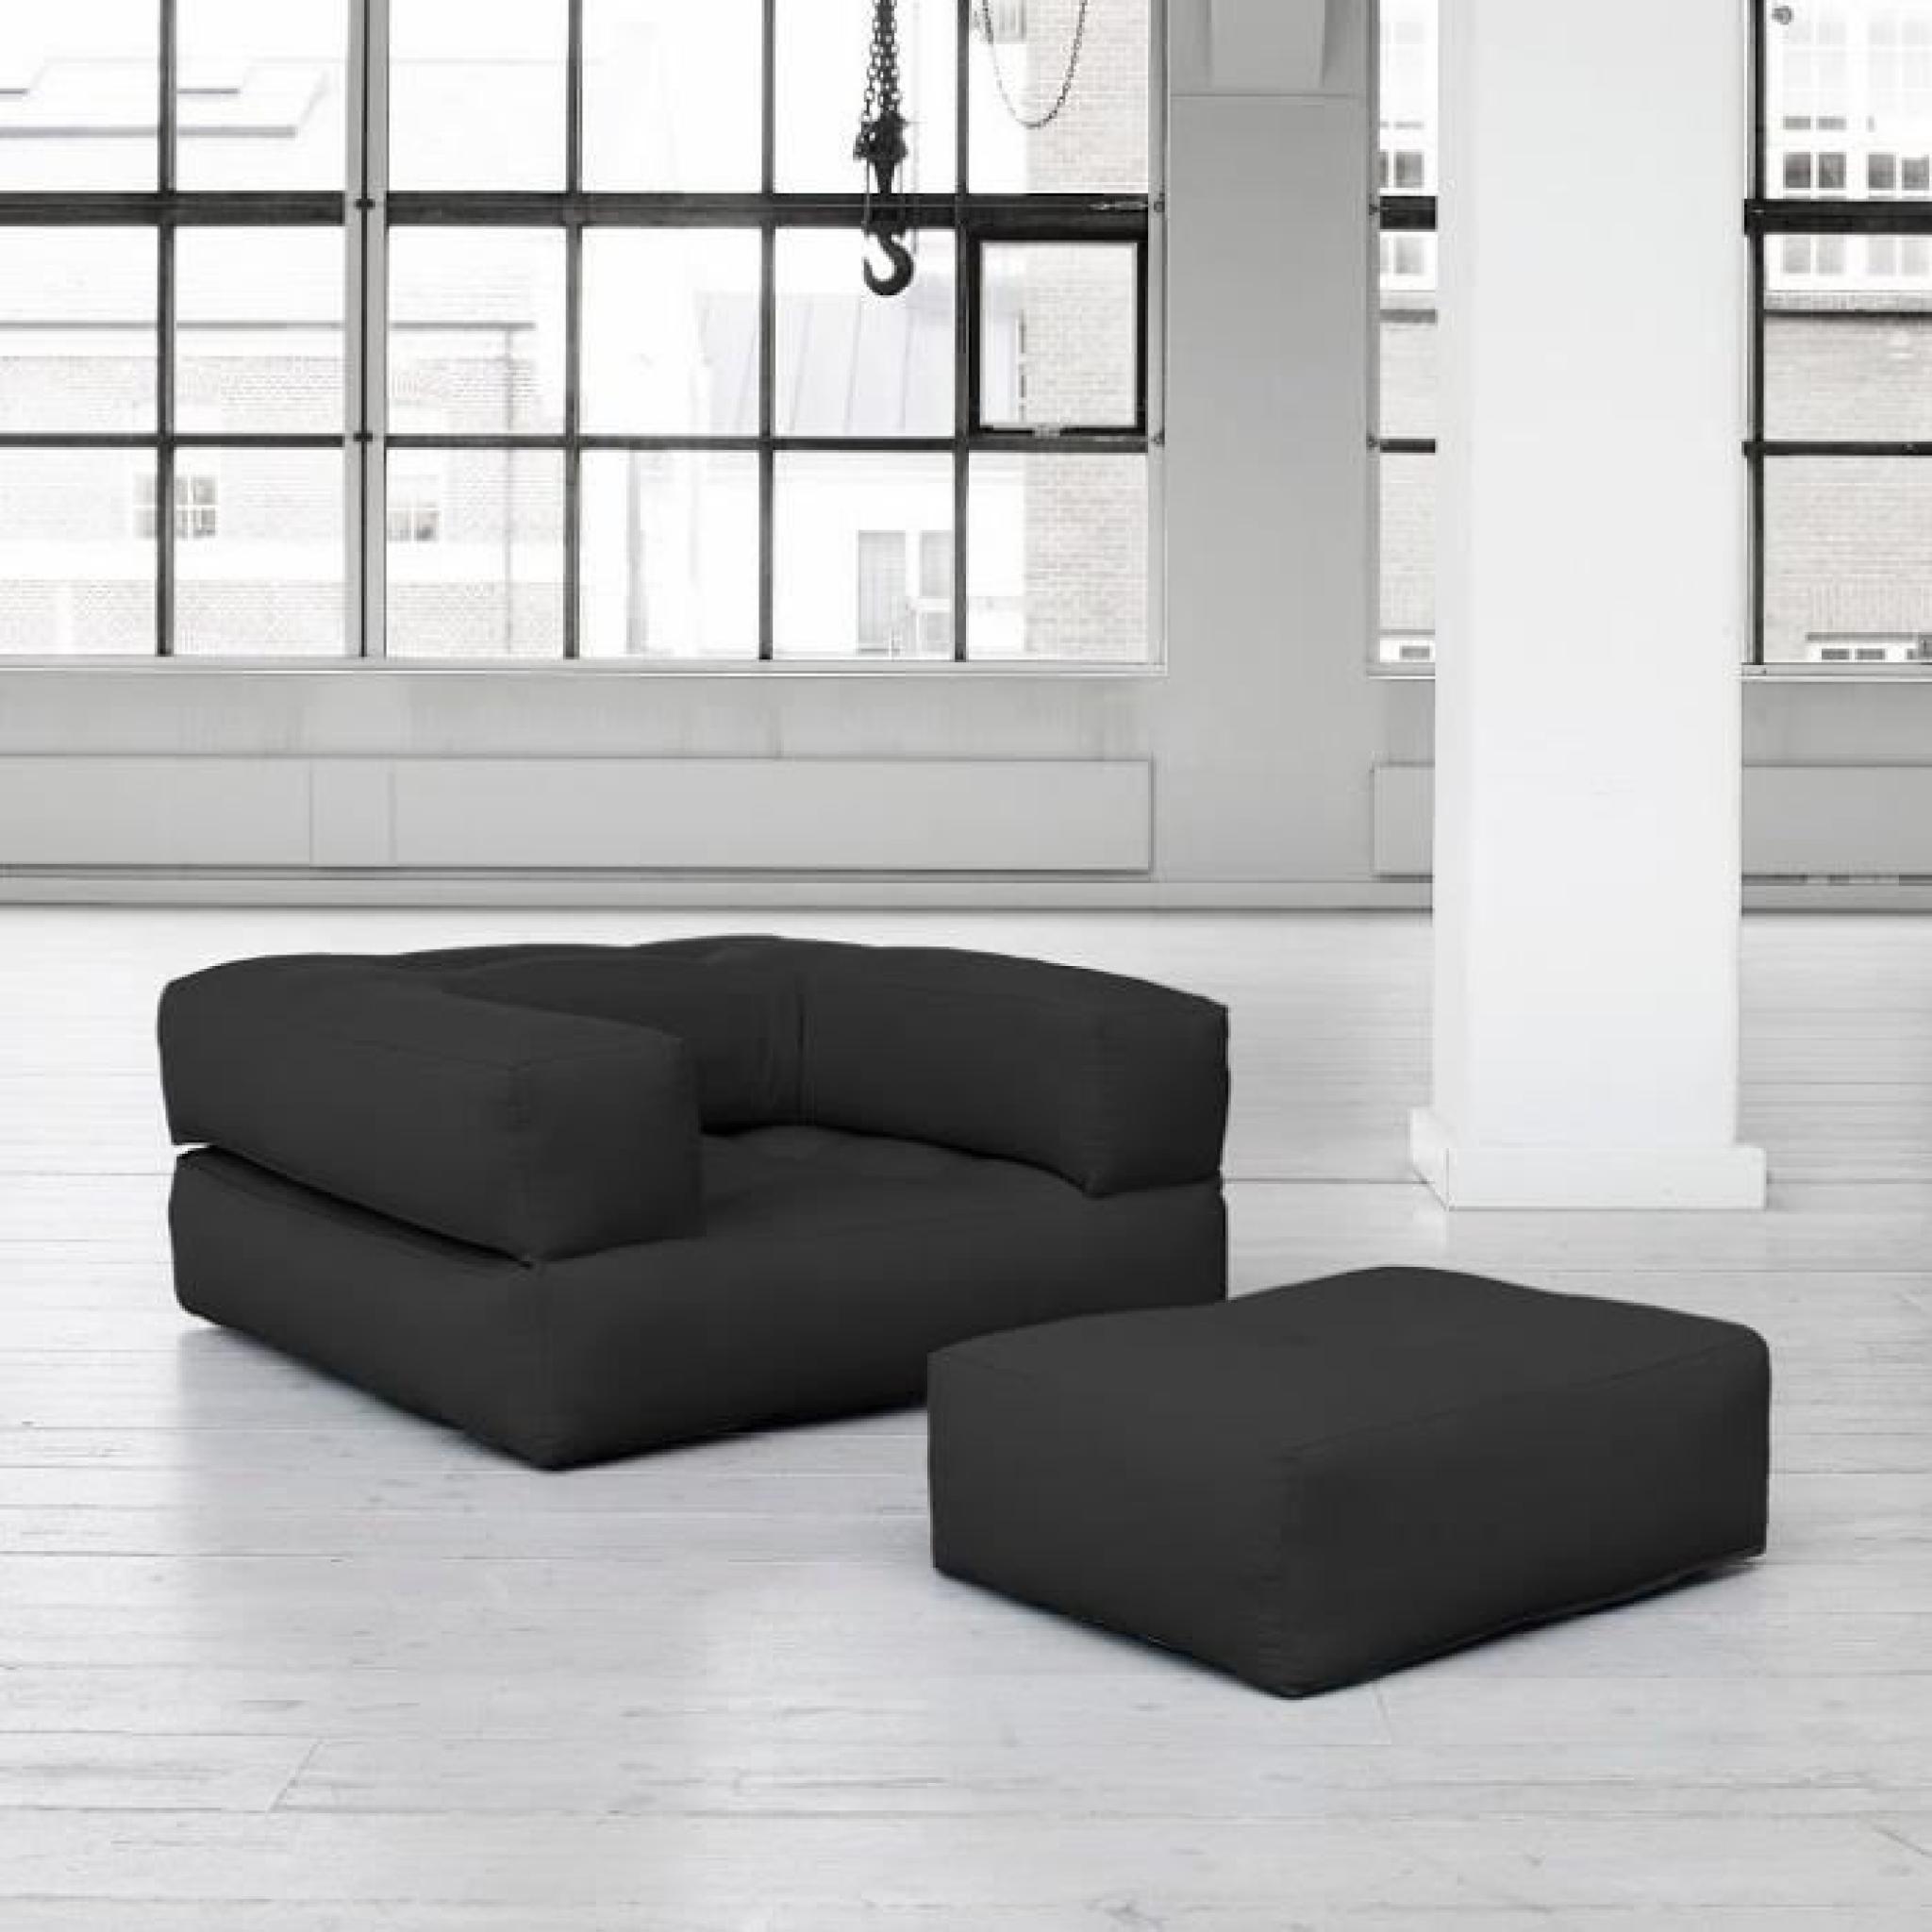 Fauteuil CUBE 3 en 1 futon grey graphite couchage 90*190*25cm